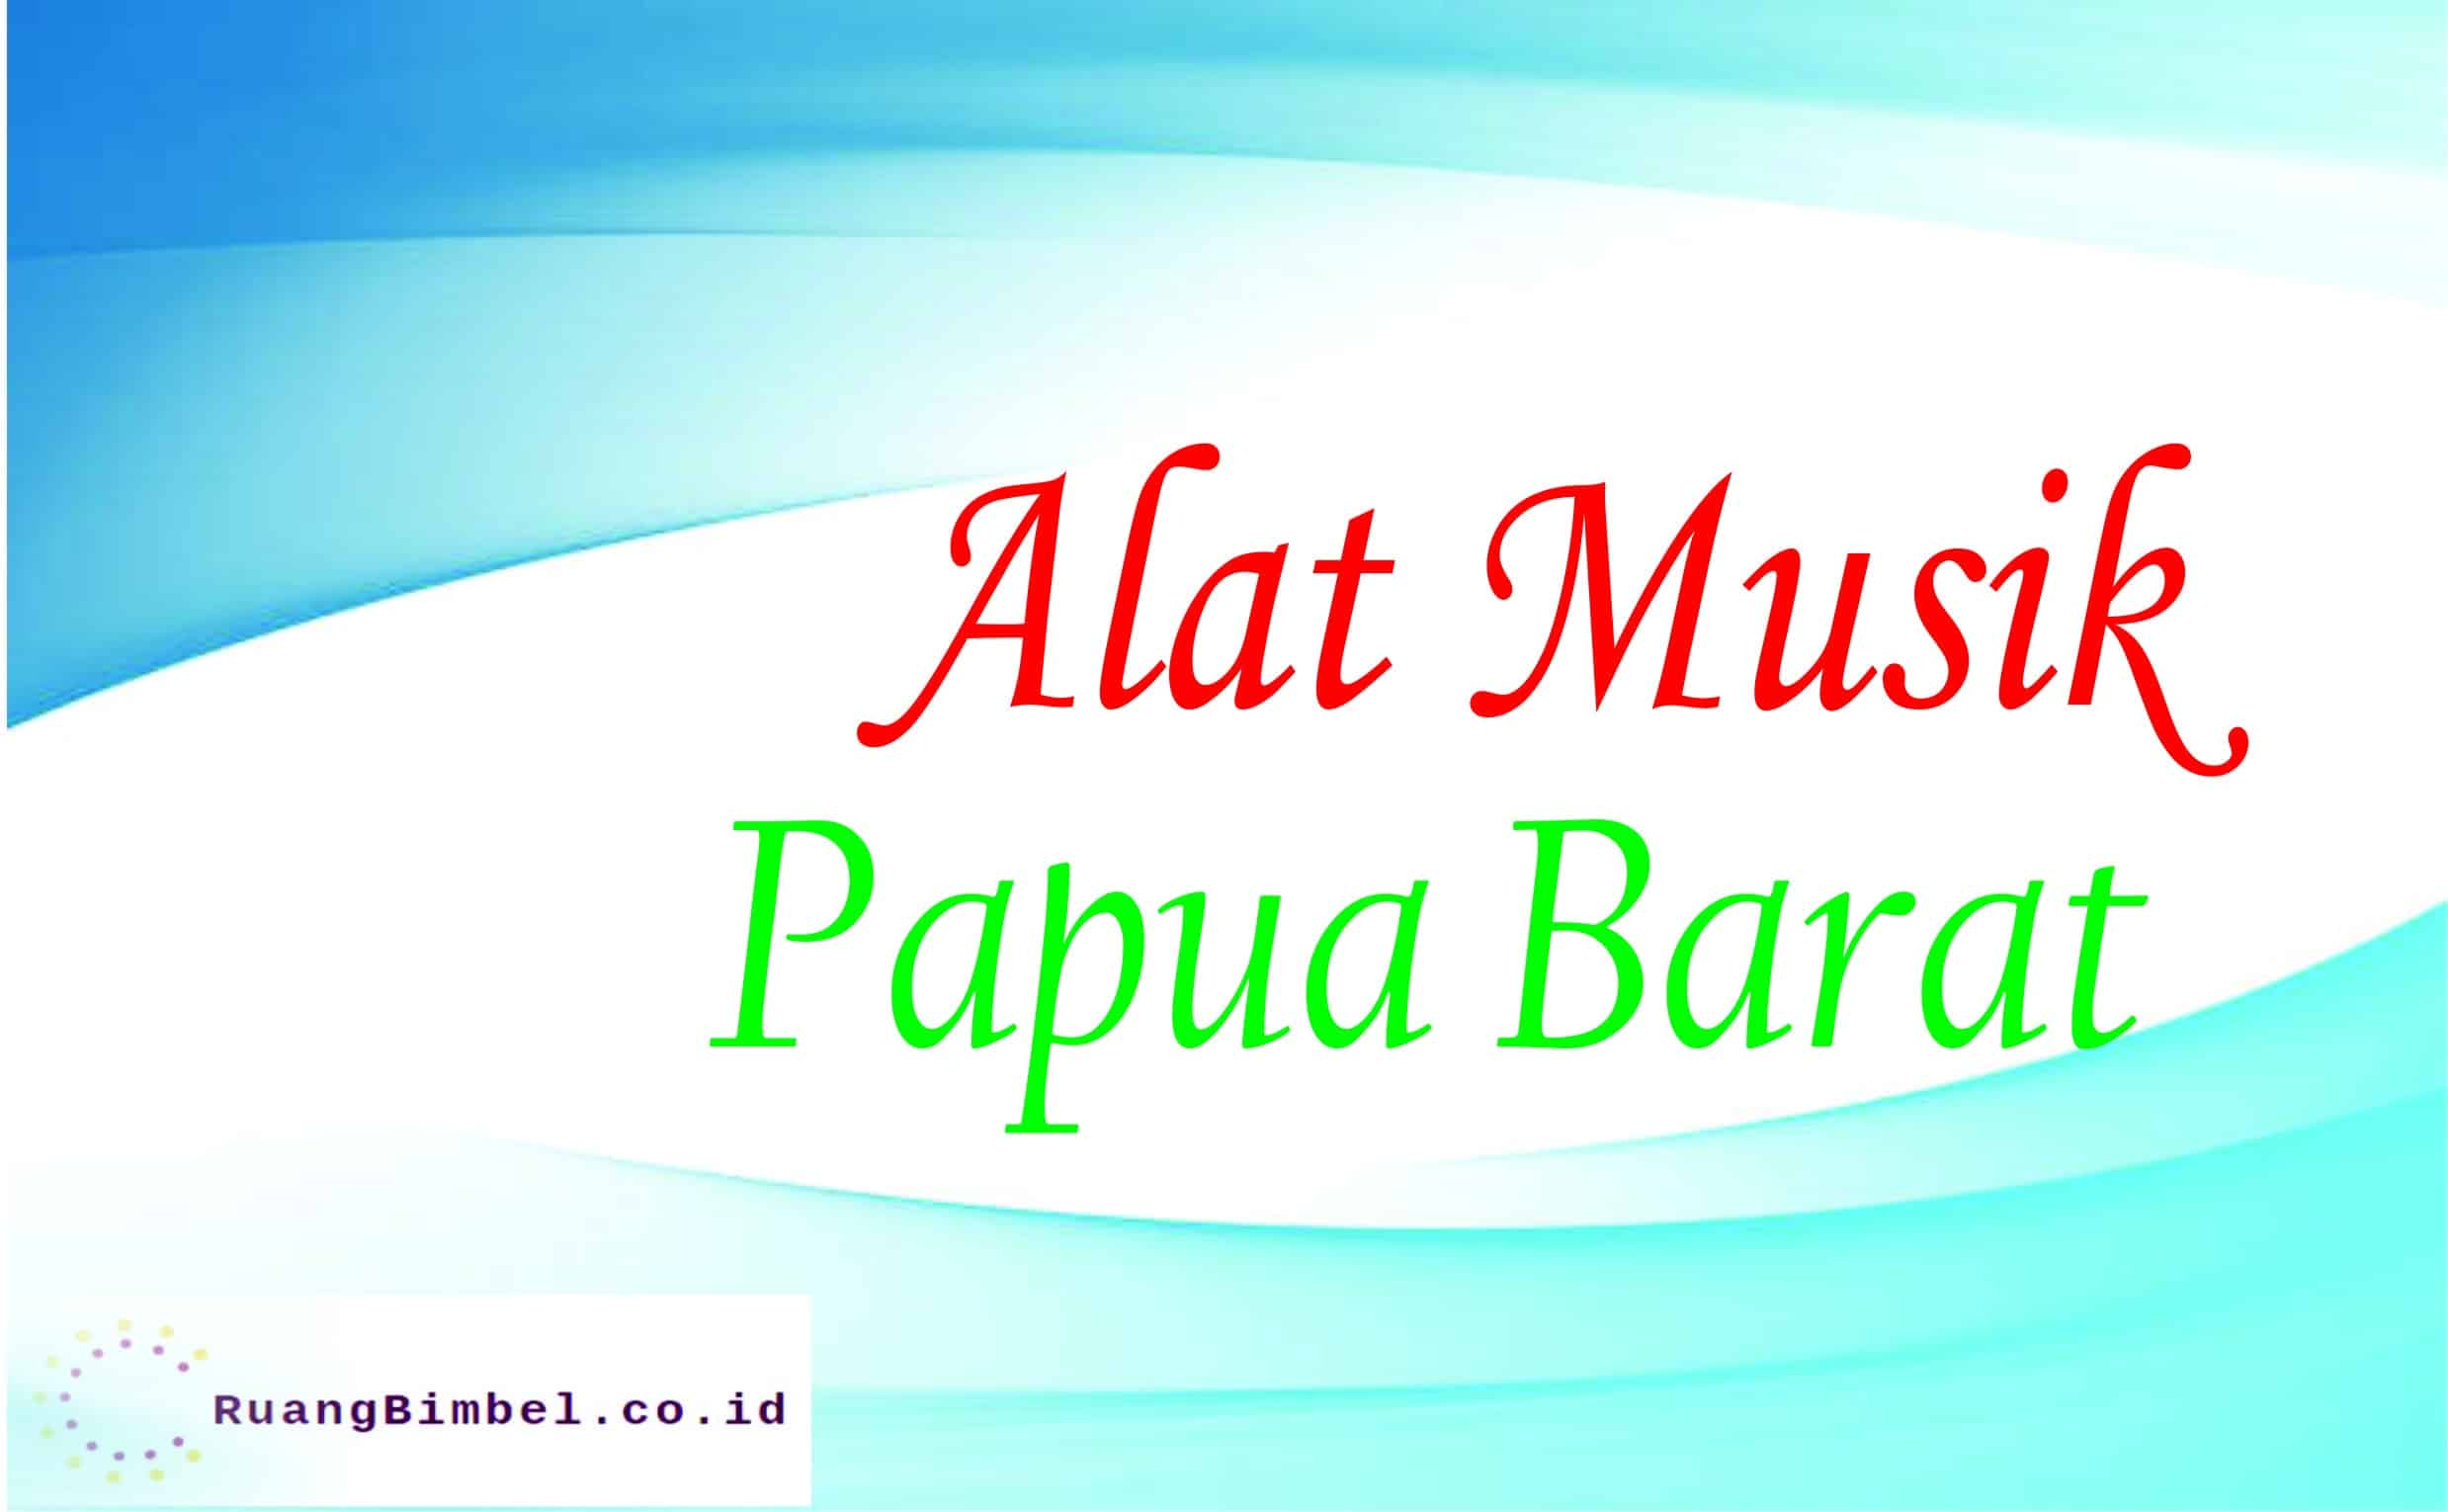 Alat Musik Tradisional Dari Papua Barat - RuangBimbel.co.id